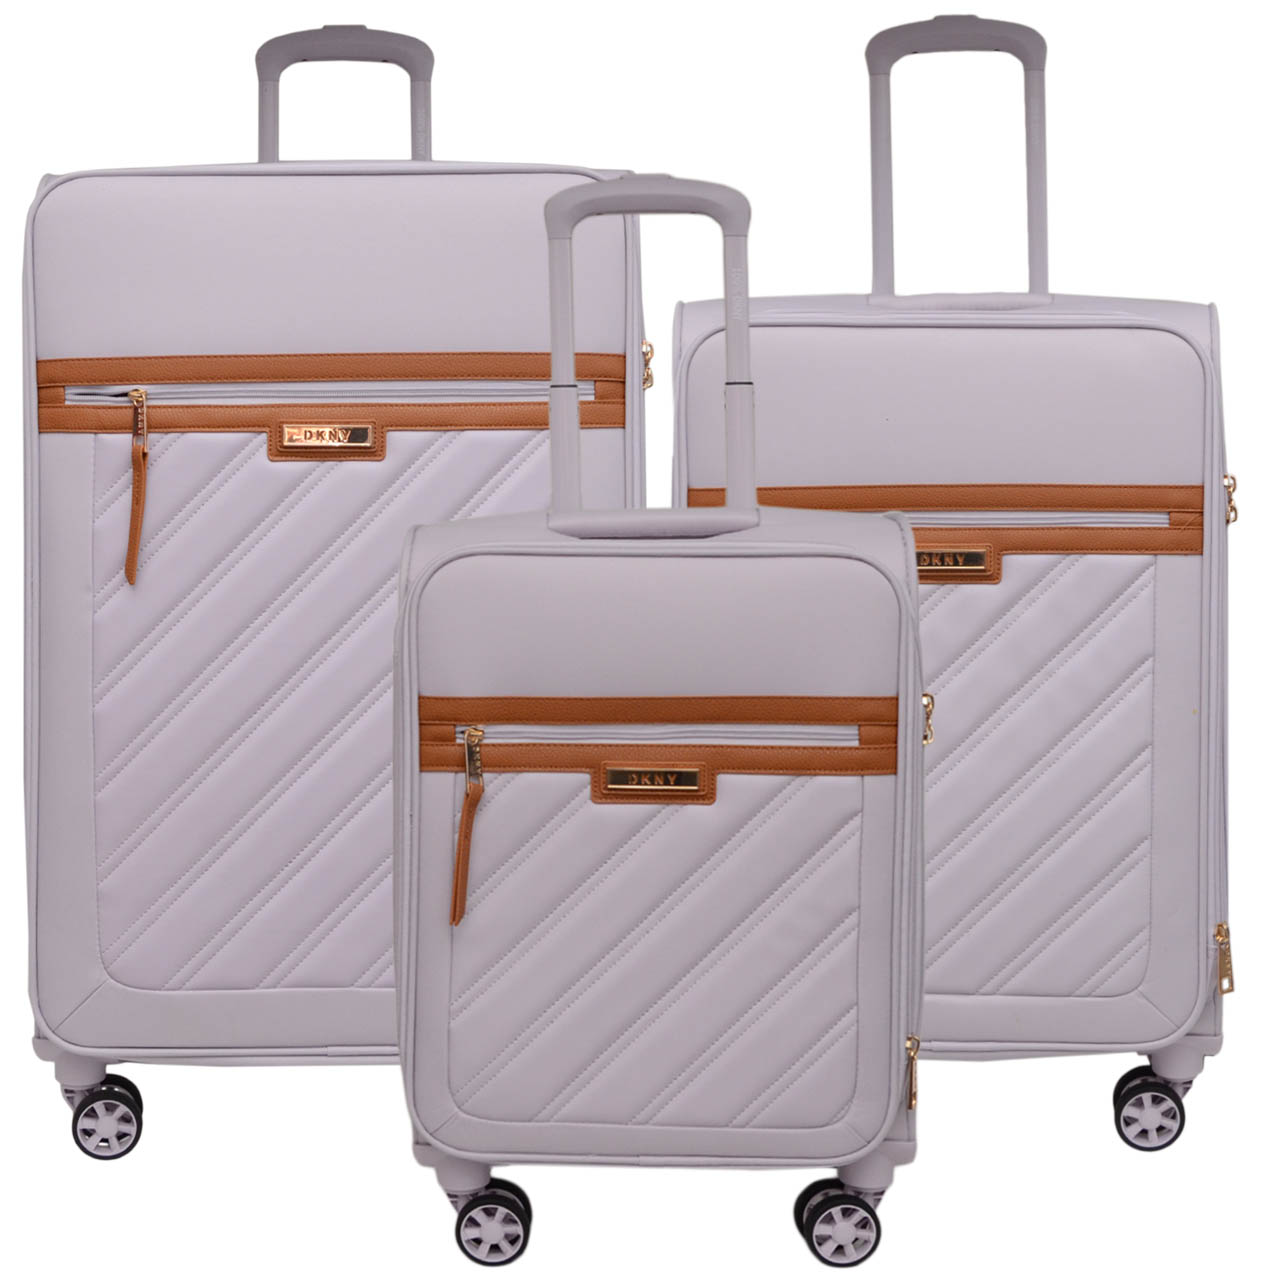 نکته خرید - قیمت روز مجموعه سه عددی چمدان دی کی ان وای مدل SWEET DREAMS SD2 خرید